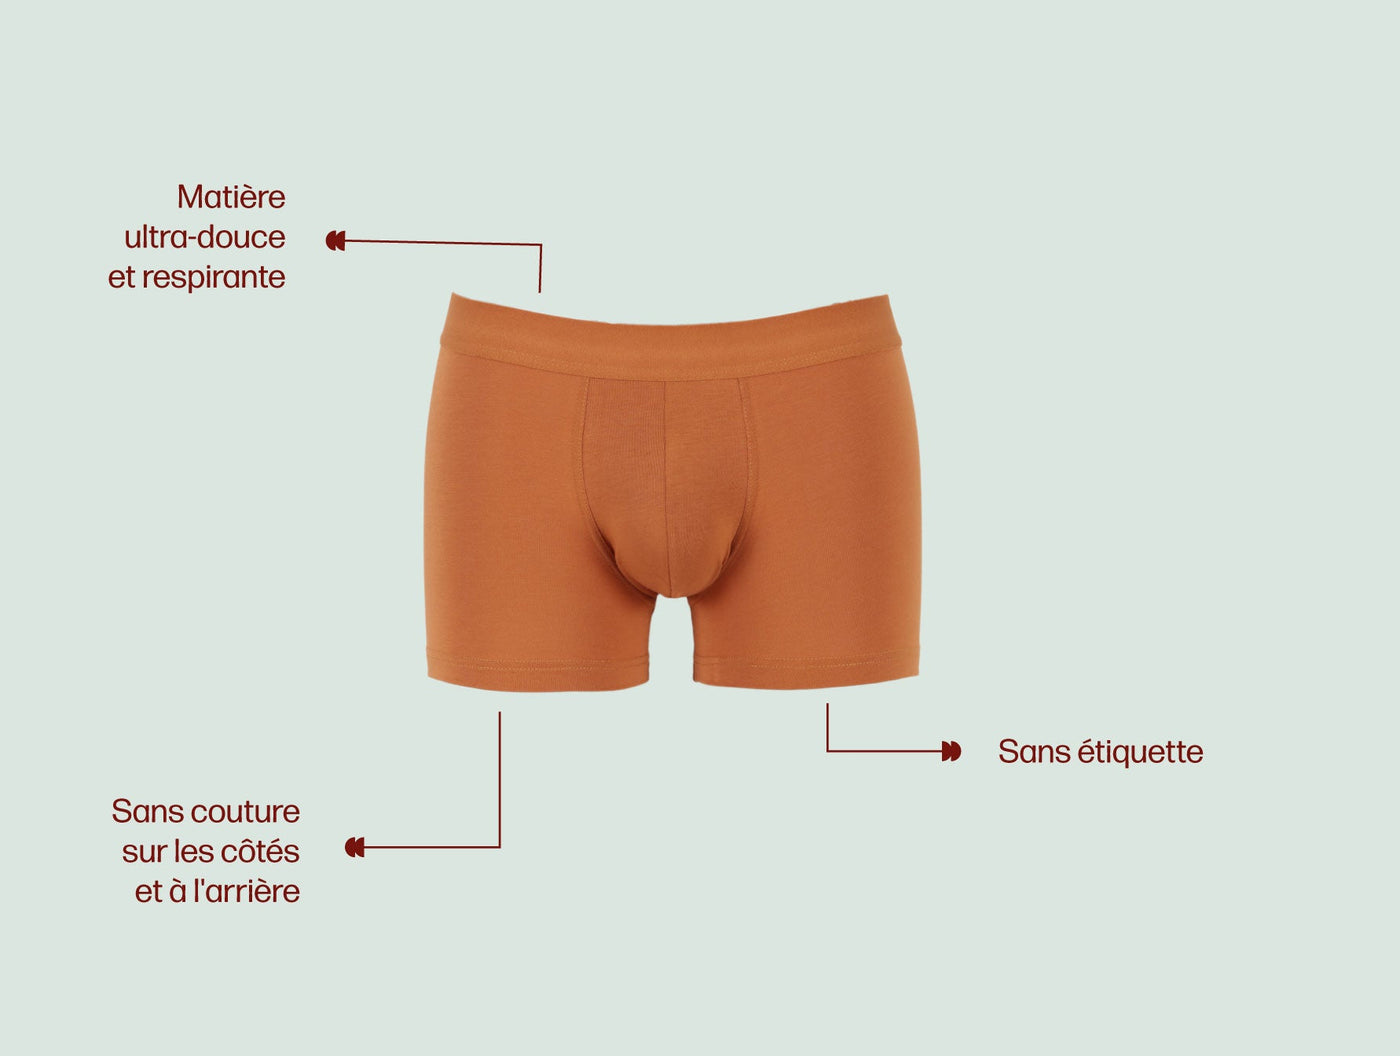 Pétrone boxer confort coton pima micromodal ocre homme#couleur_ocre